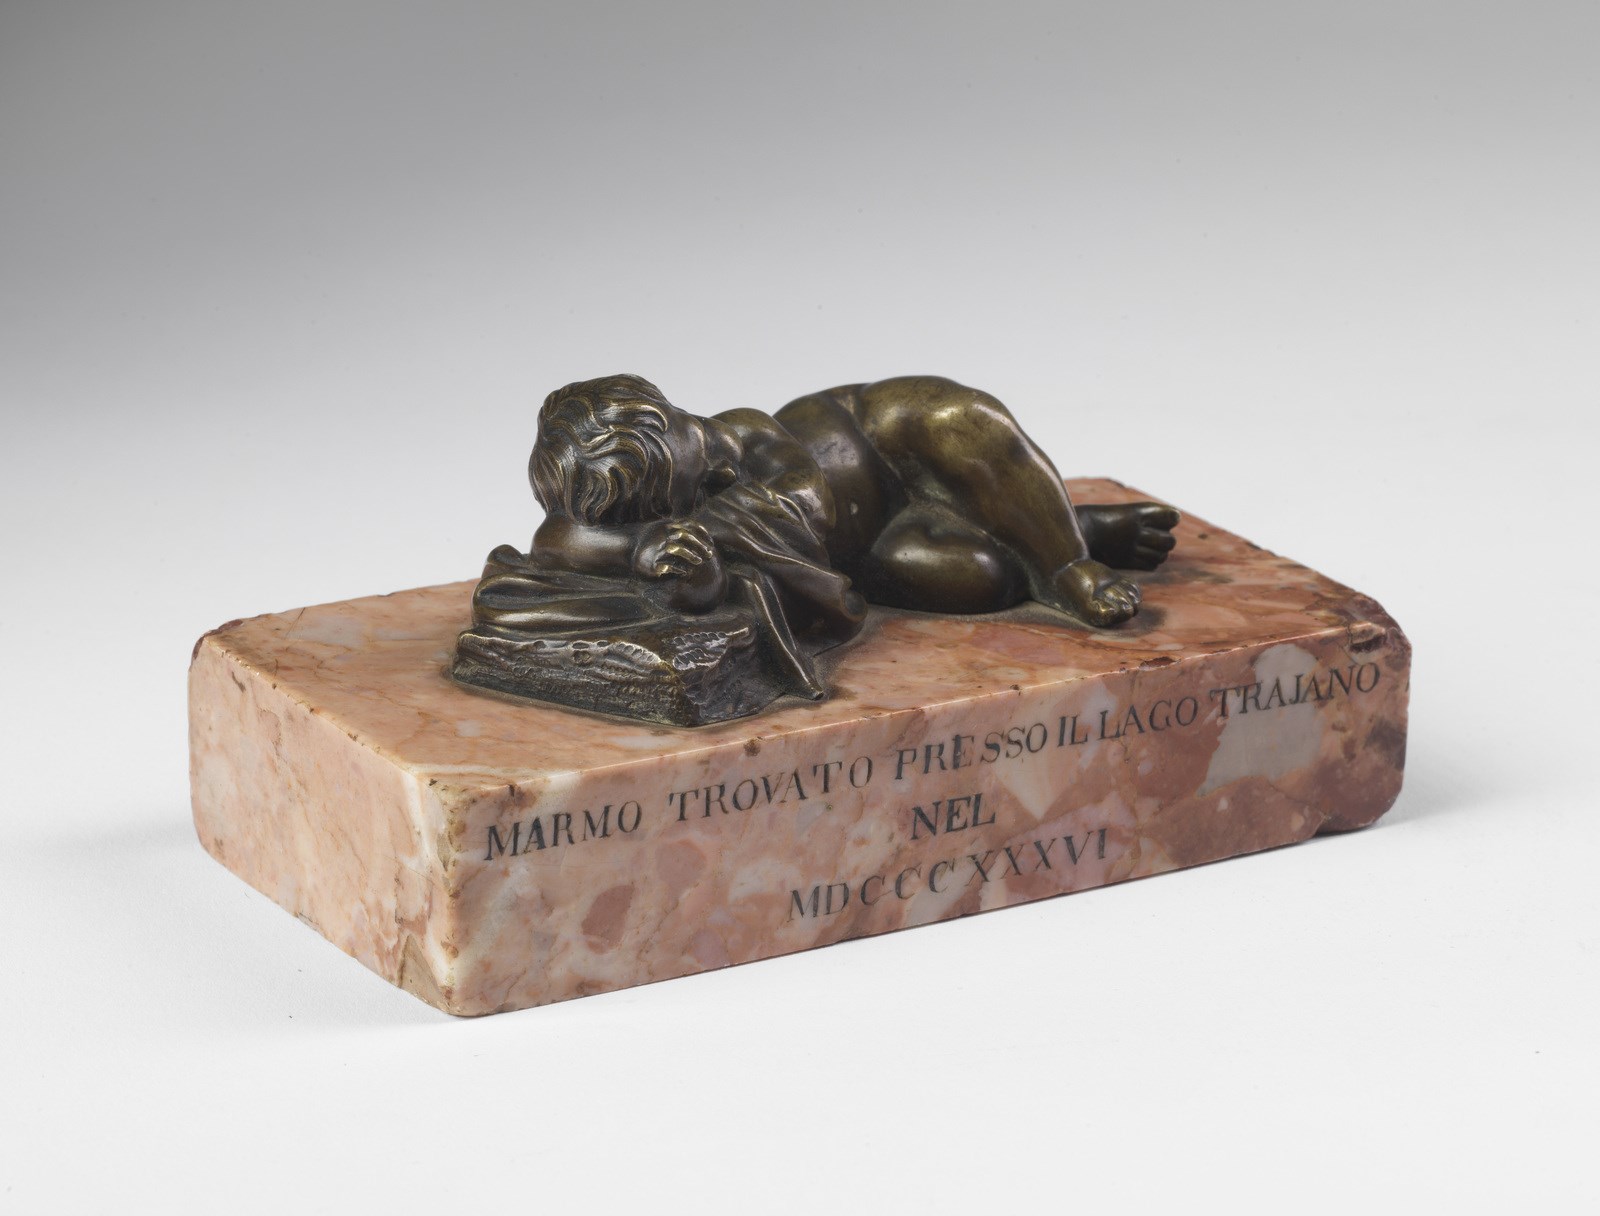 MANIFATTURA ITALIANA DEL XIX SECOLO Sleeping putto in bronze. - Image 3 of 3